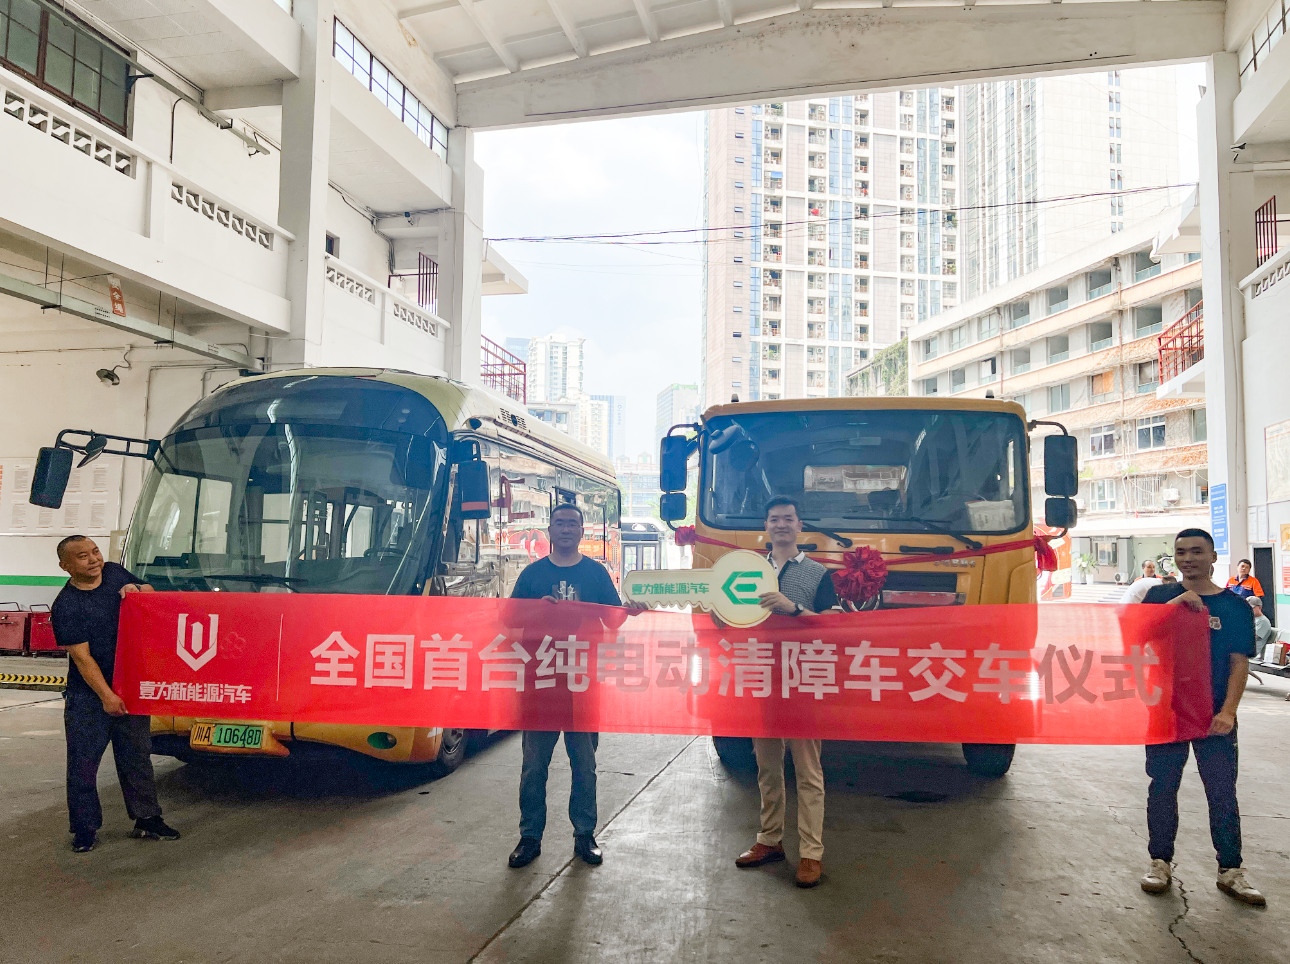 Yiwei New Energy Vehicles｜ Pirmoji šalyje 18 tonų elektrinio vilkiko pristatymo ceremonija